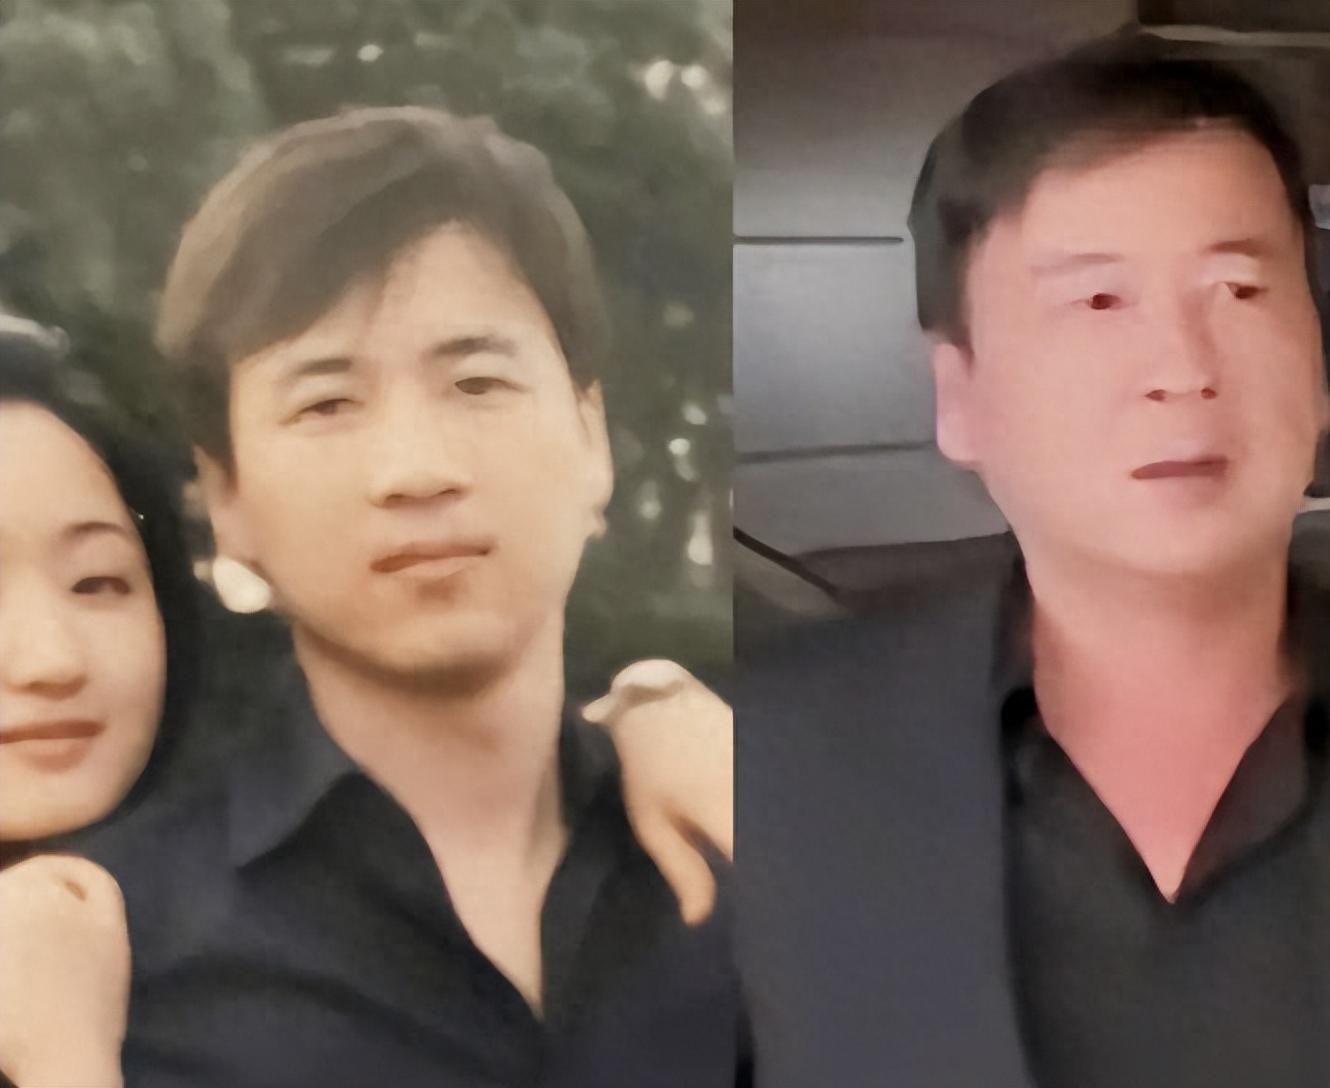 分手的27年后,赖文峰出狱乡下结婚度日,杨钰莹的选择令人心疼